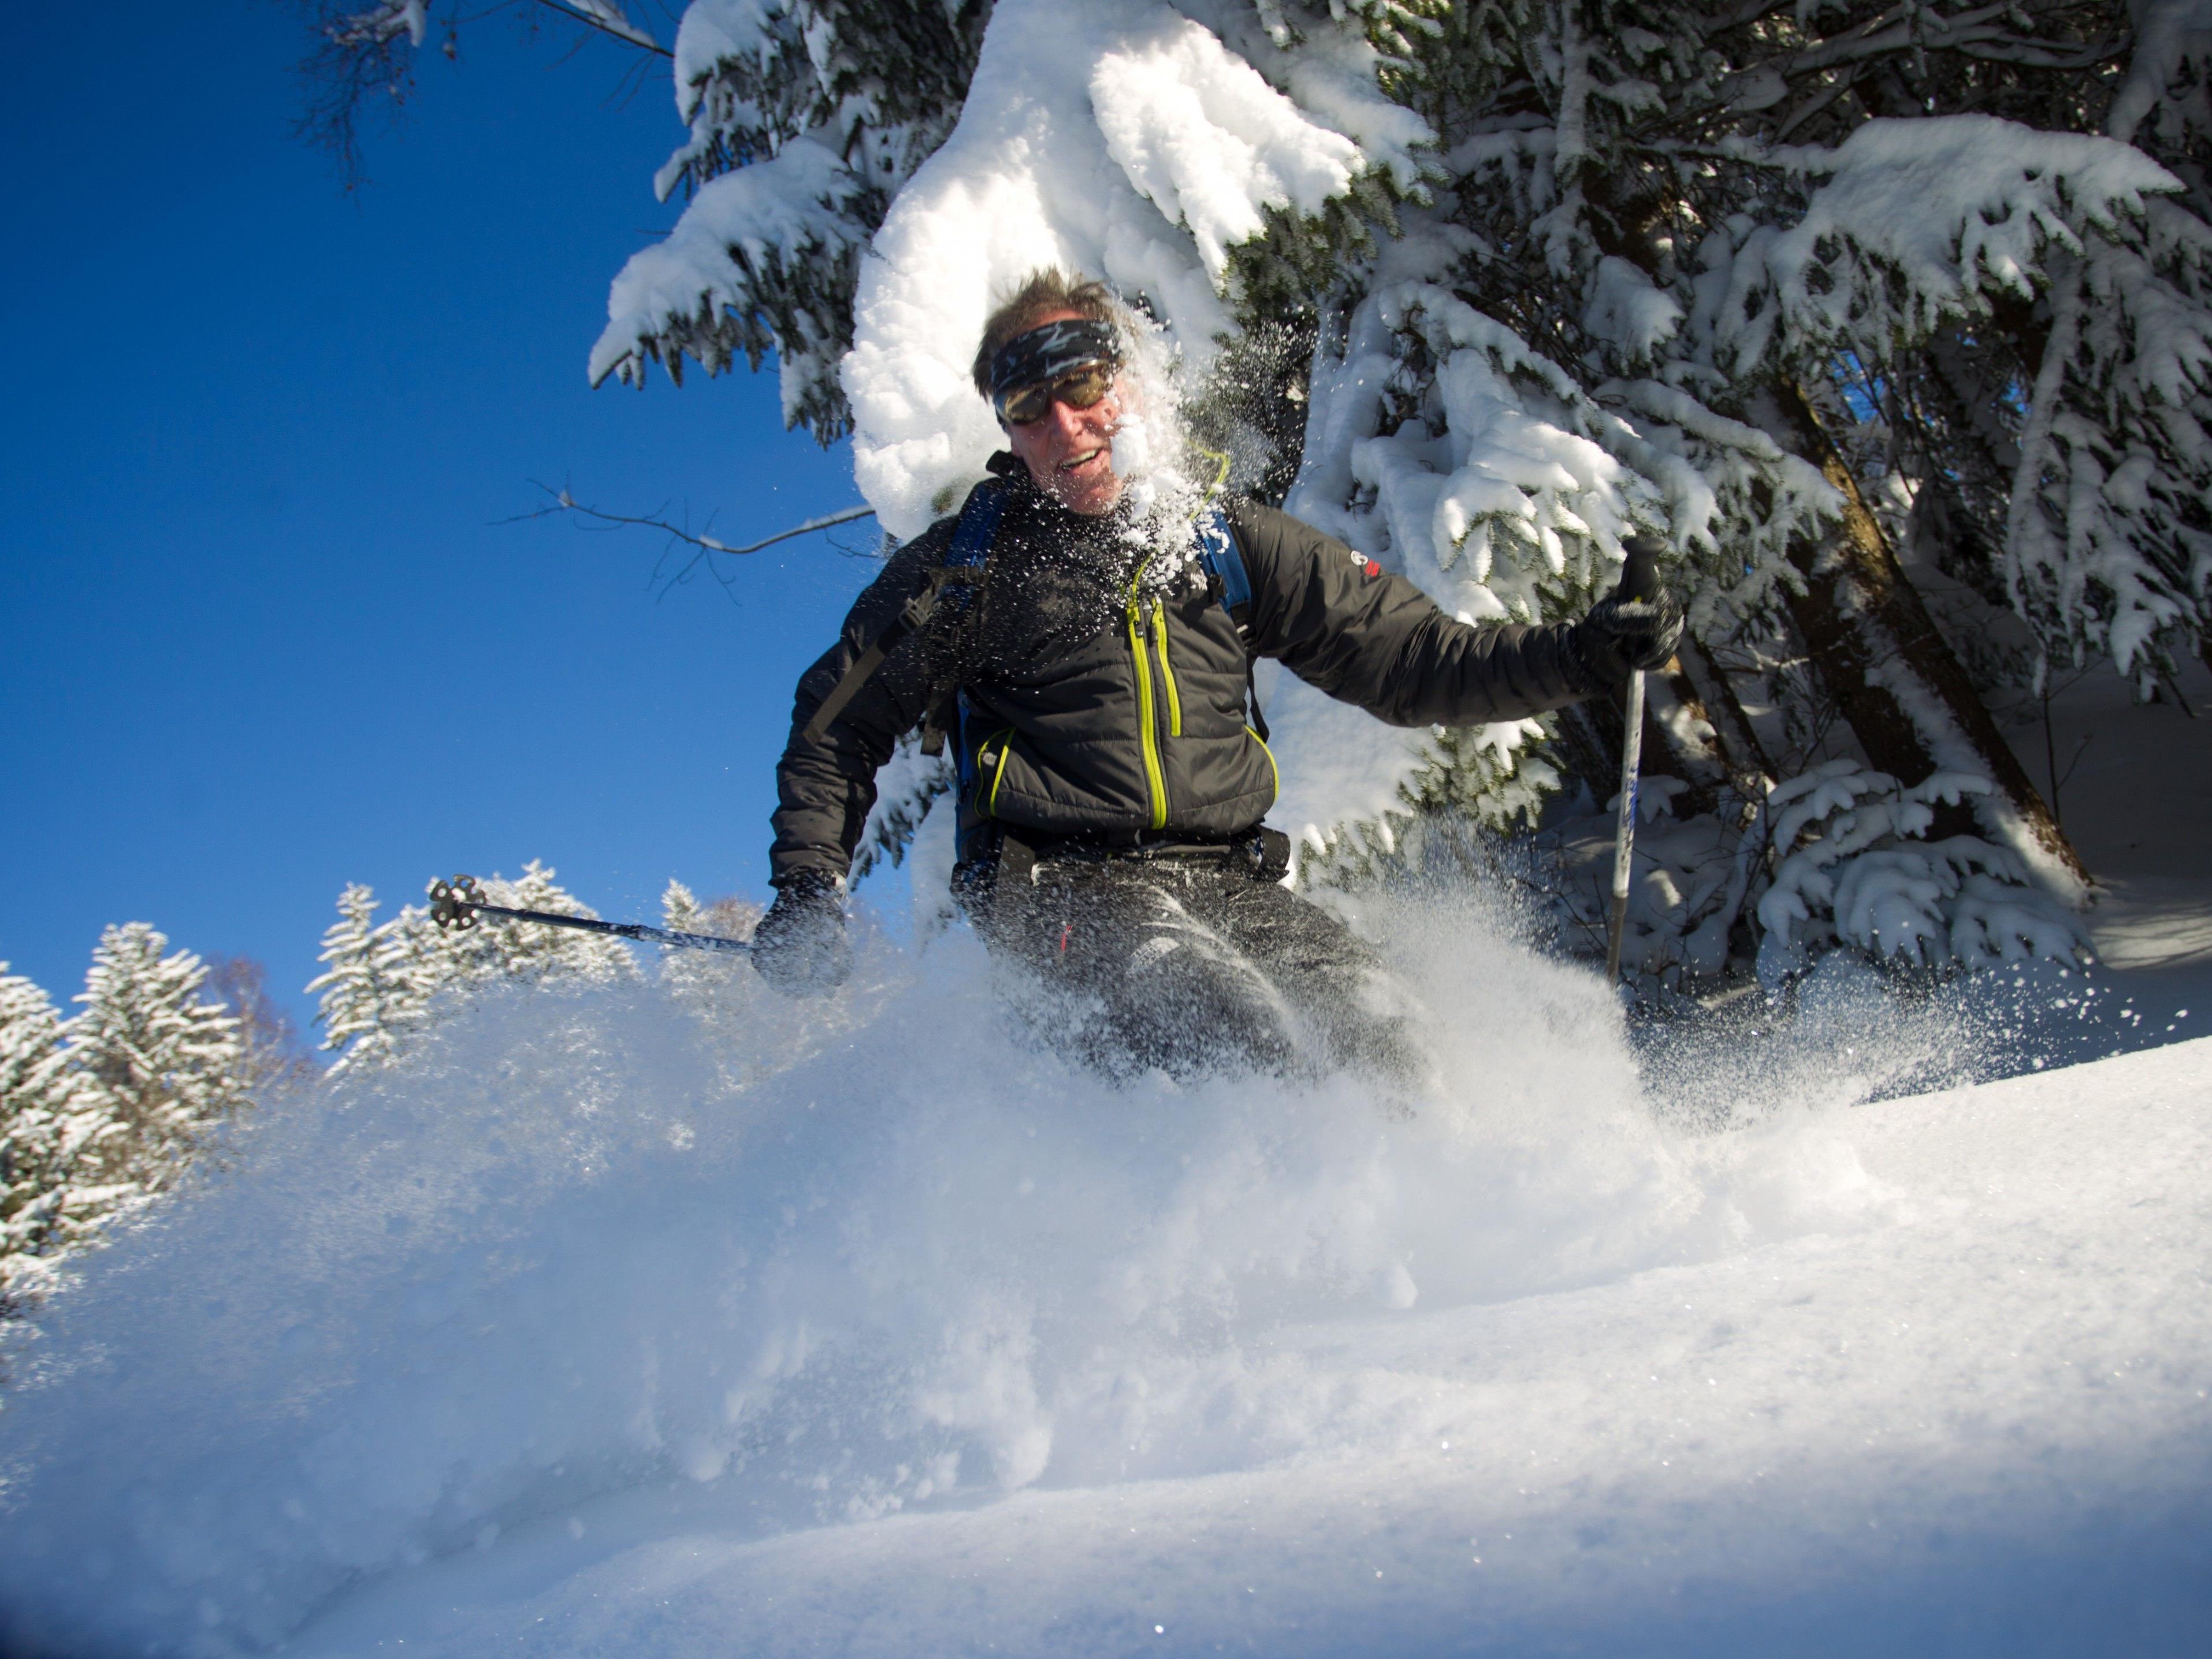 Wenn keine Betretungs- oder Befahrungsverbote gelten, ist Skifahren im Wald grundsätzlich erlaubt.